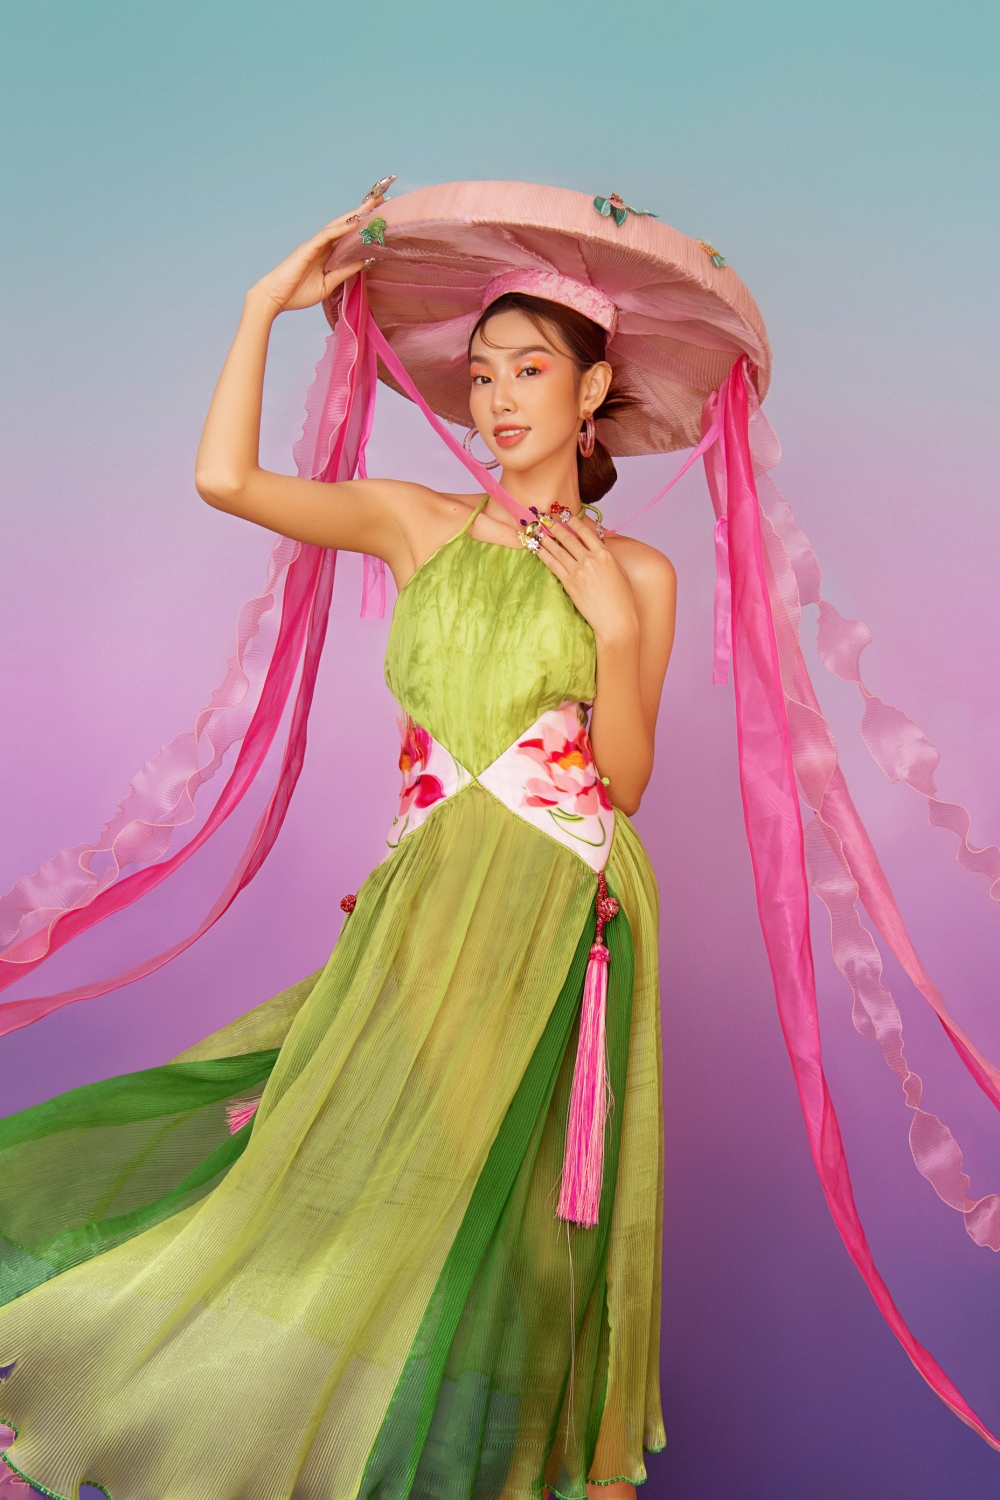 Hoa hậu Thùy Tiên diện yếm đào, đội nón quai thao trong bộ ảnh đón Tết